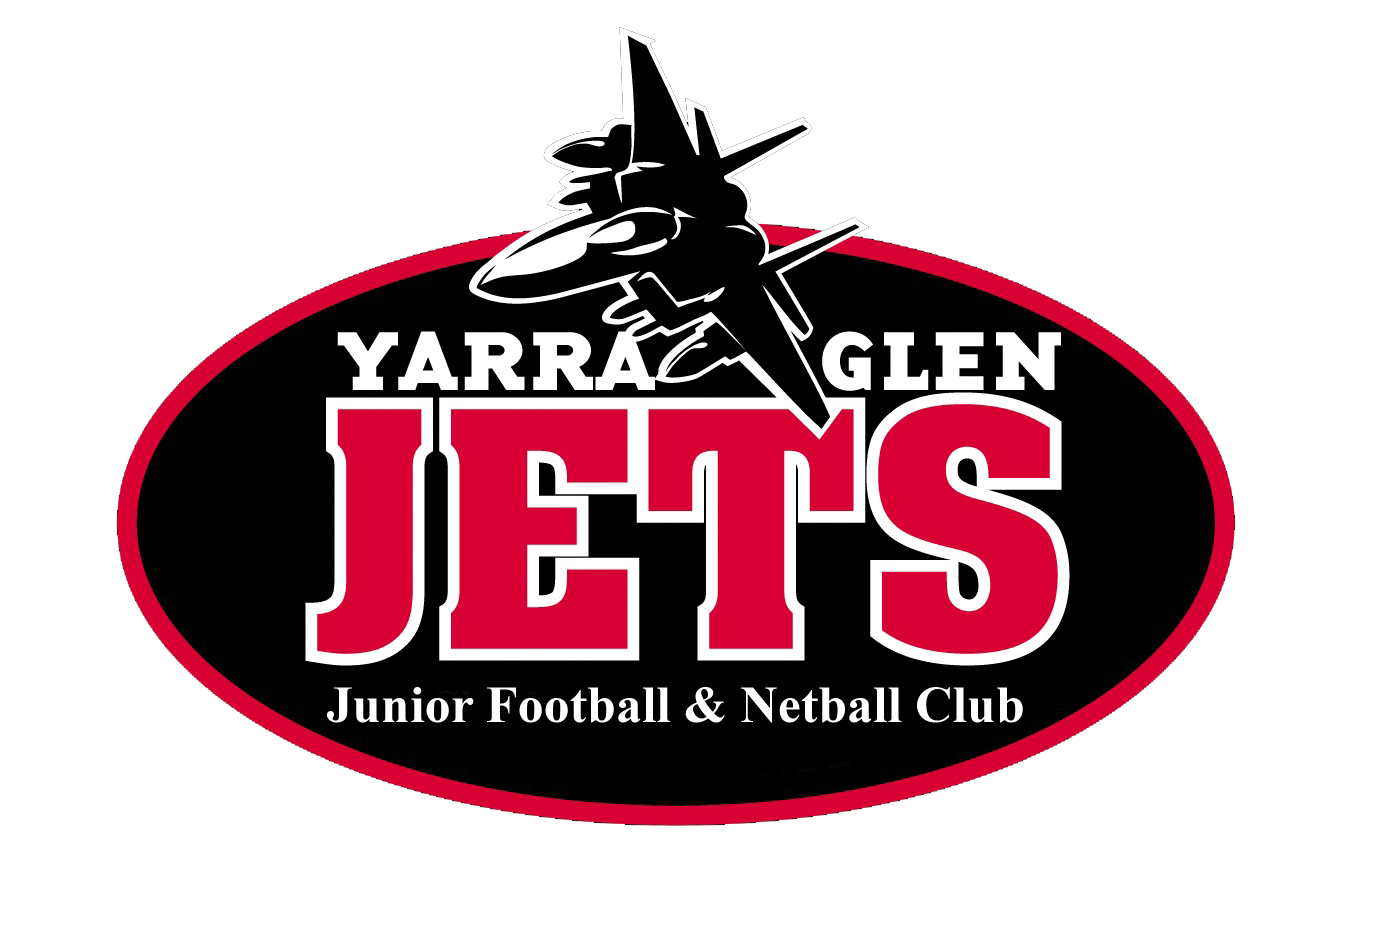 Yarra Glen Junior Football & Netball Club